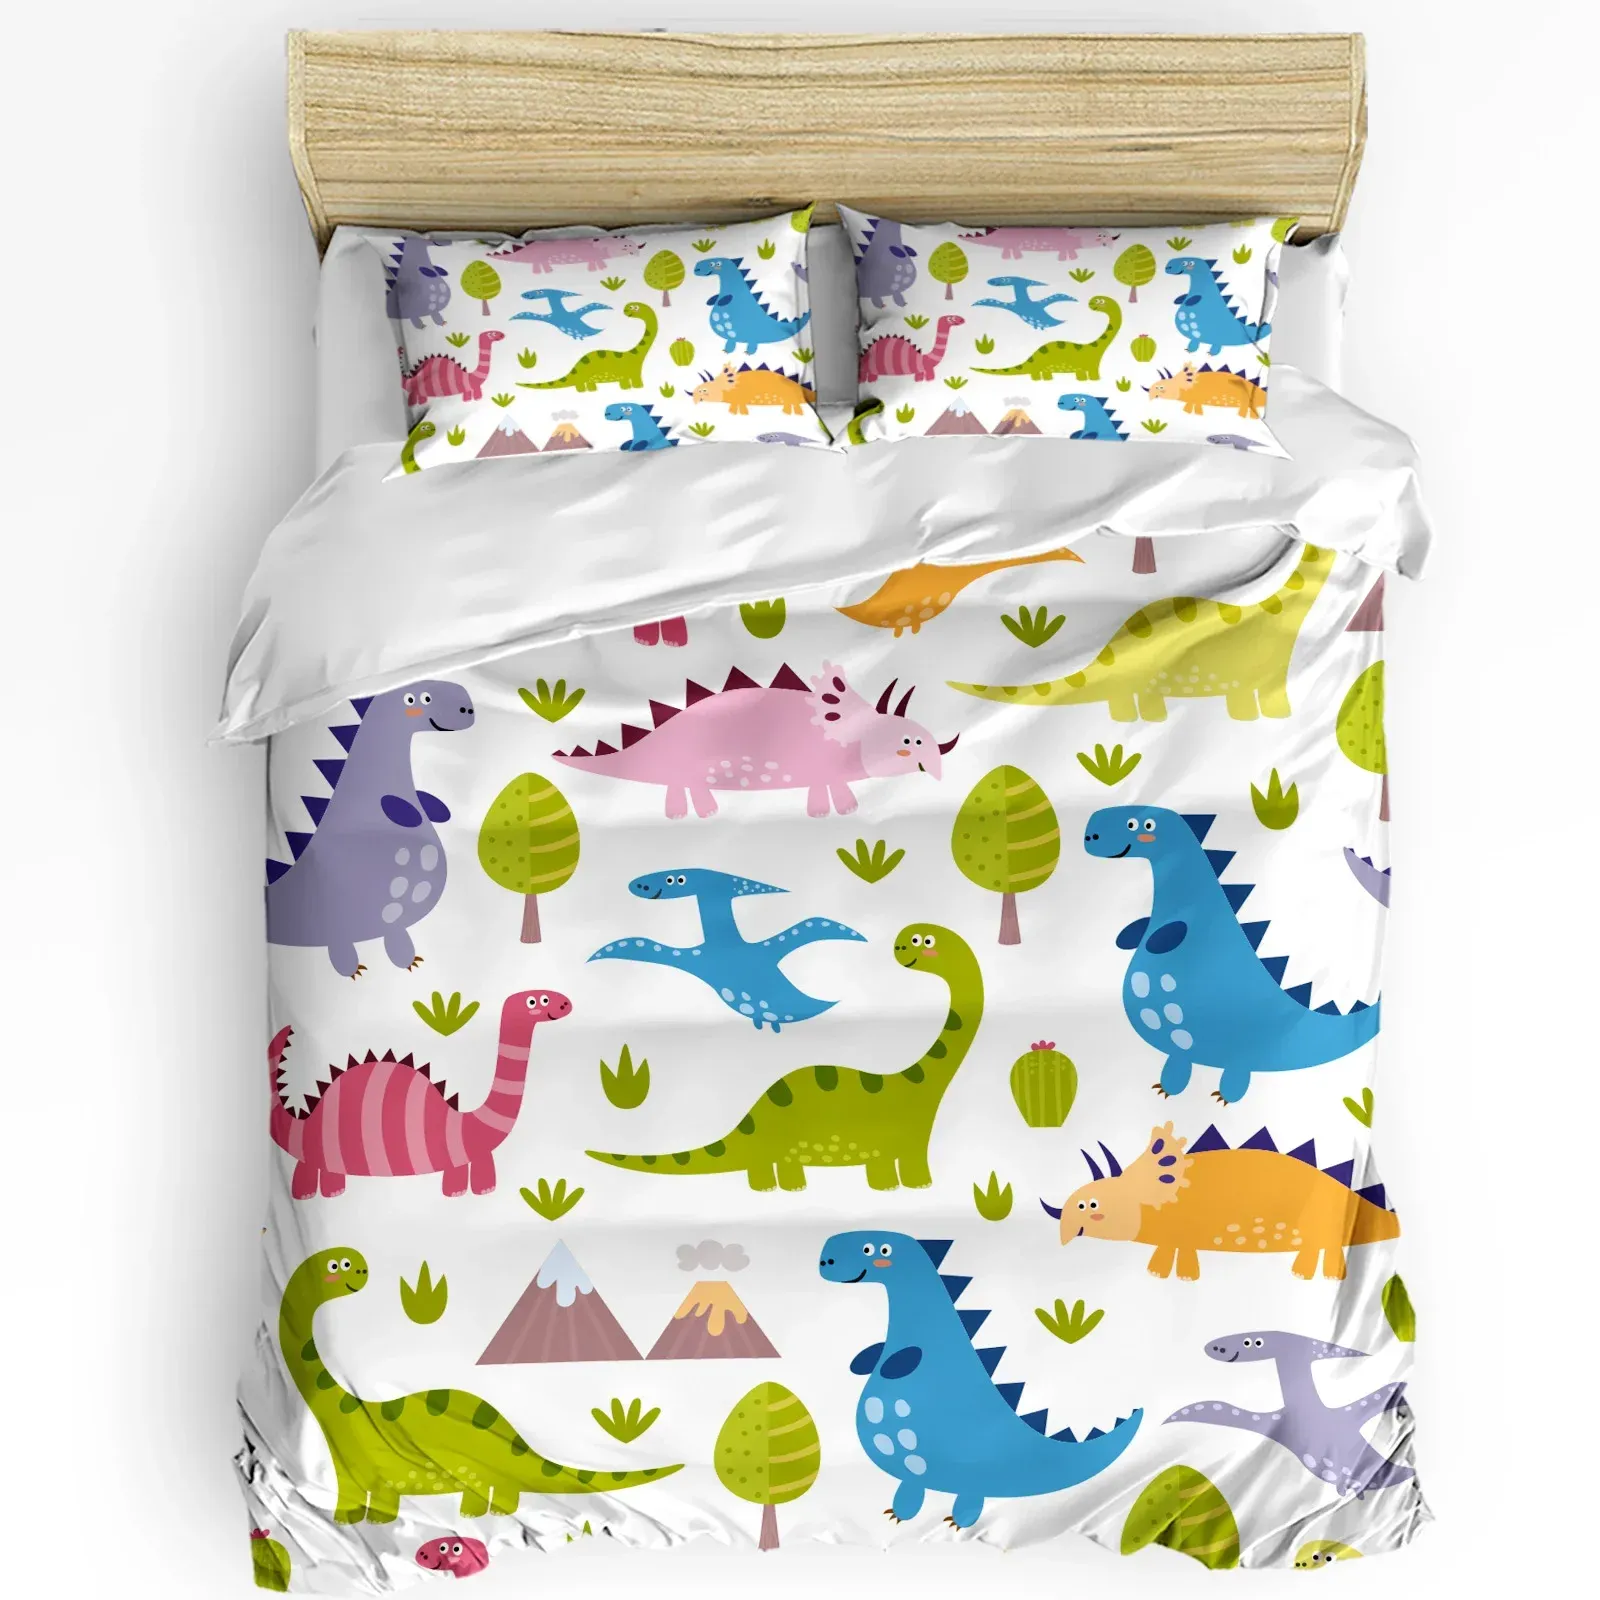 Устает каваи динозавр мультфильм белый постельный тел набор 3PCS подмолочная крышка для взрослых для взрослого стеганого одеяла для домашнего текстиля